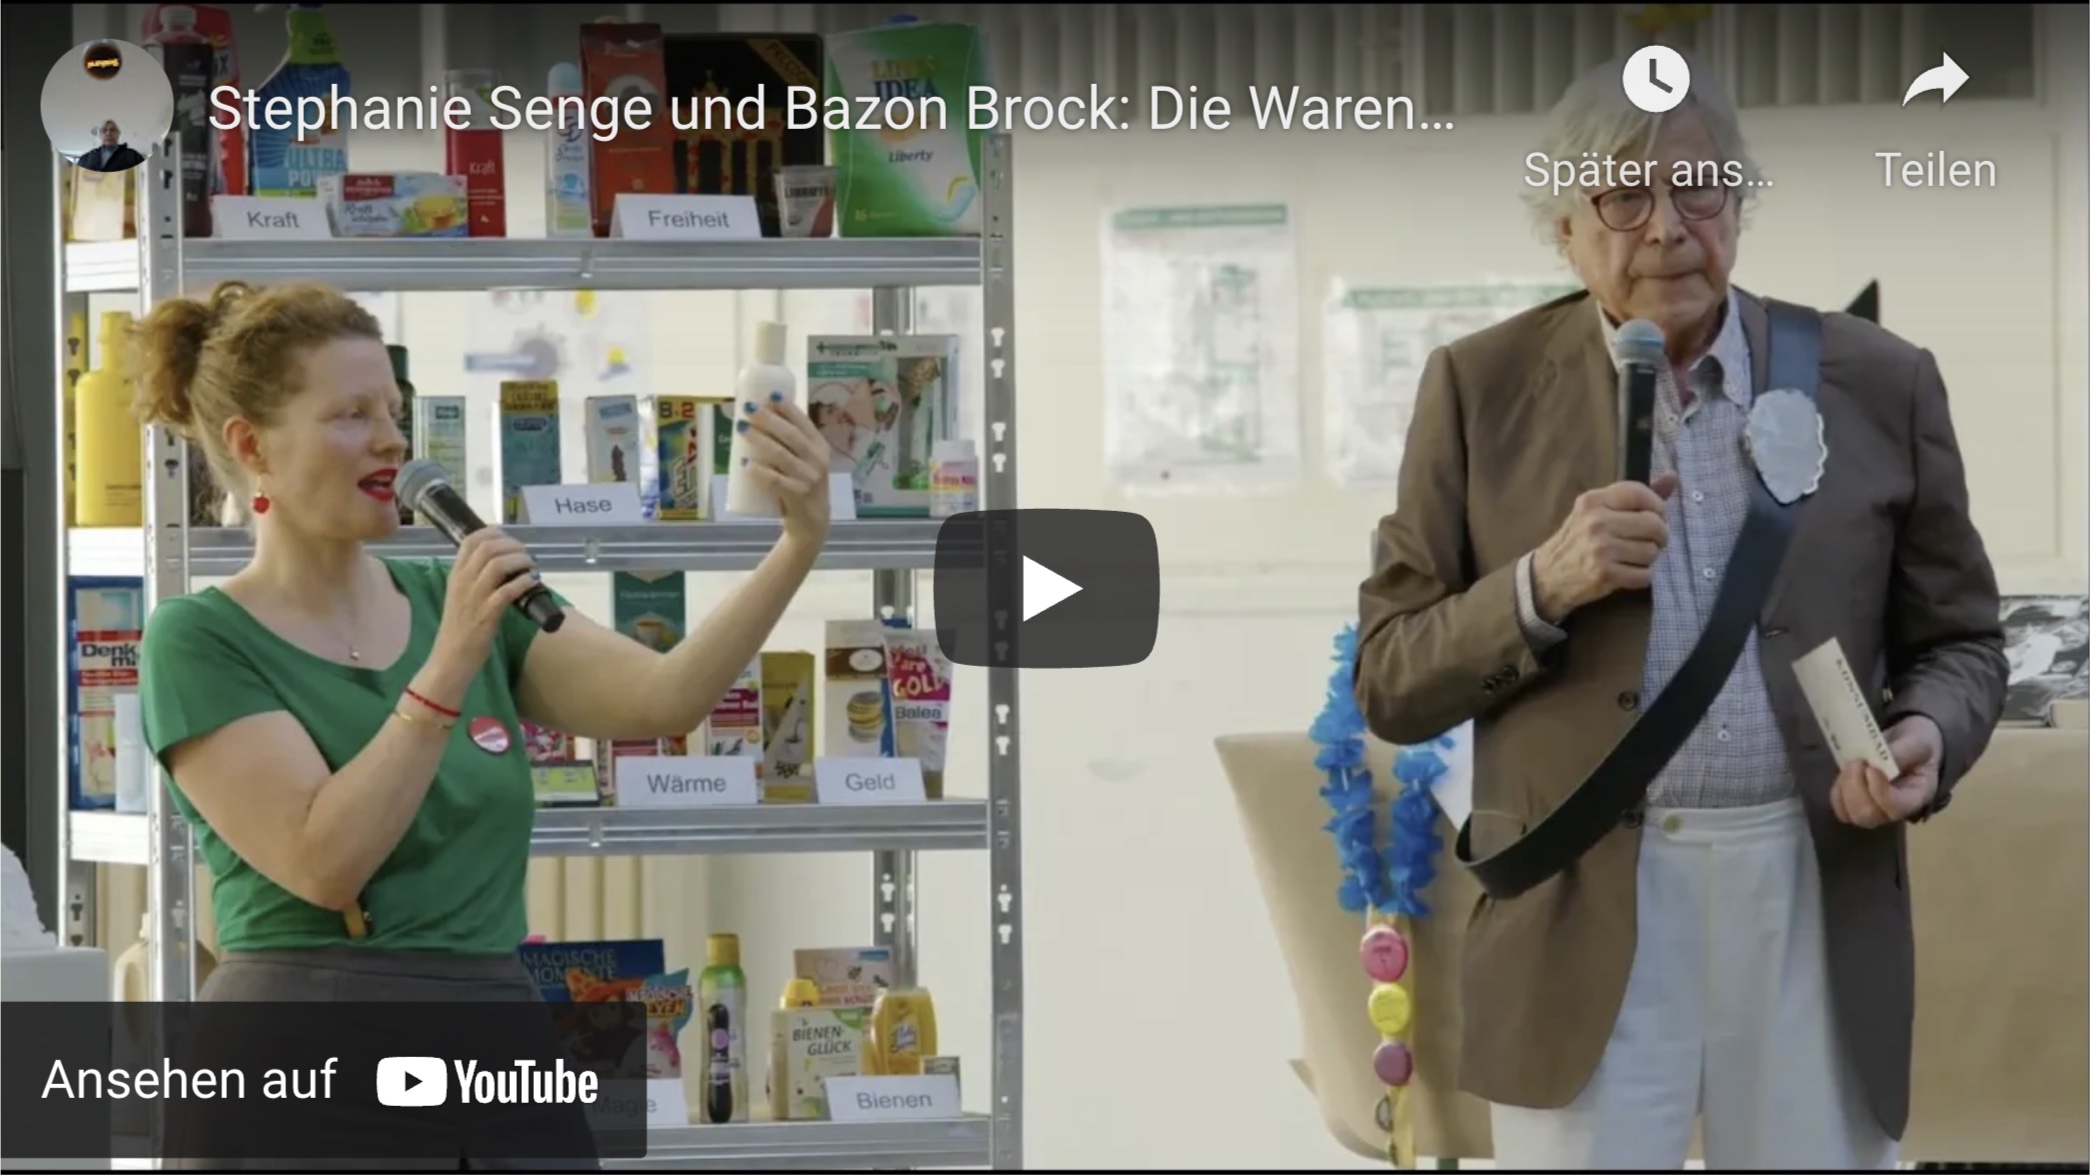 Stephanie Senge & Bazon Brock: Die Warenwunder finden im Supermarkt statt. Konsumbibliothek Beuys